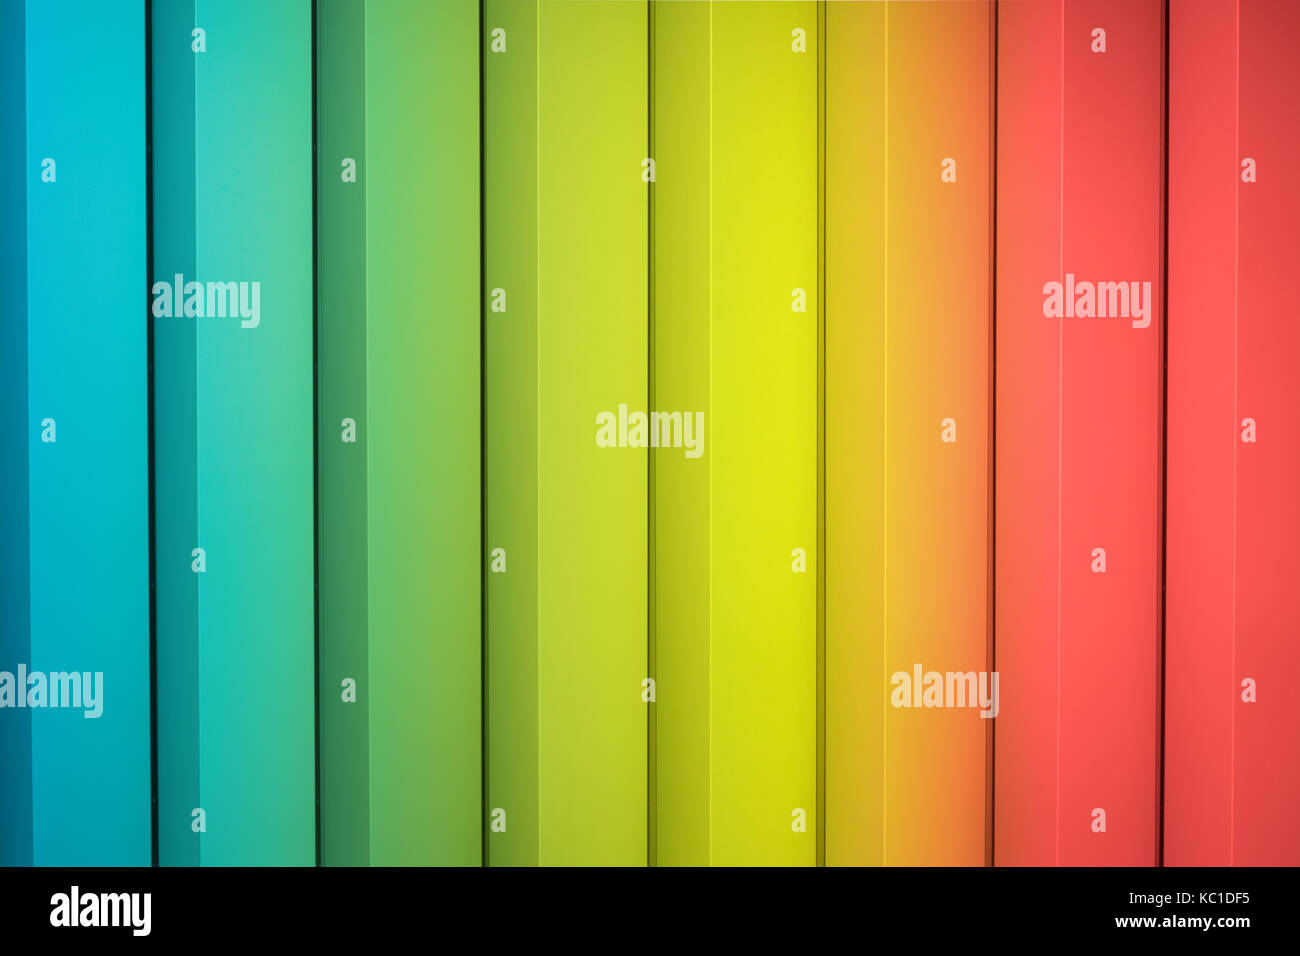 Abstrakte bunten Hintergrund - Regenbogen Farben, gestreift Stockfoto